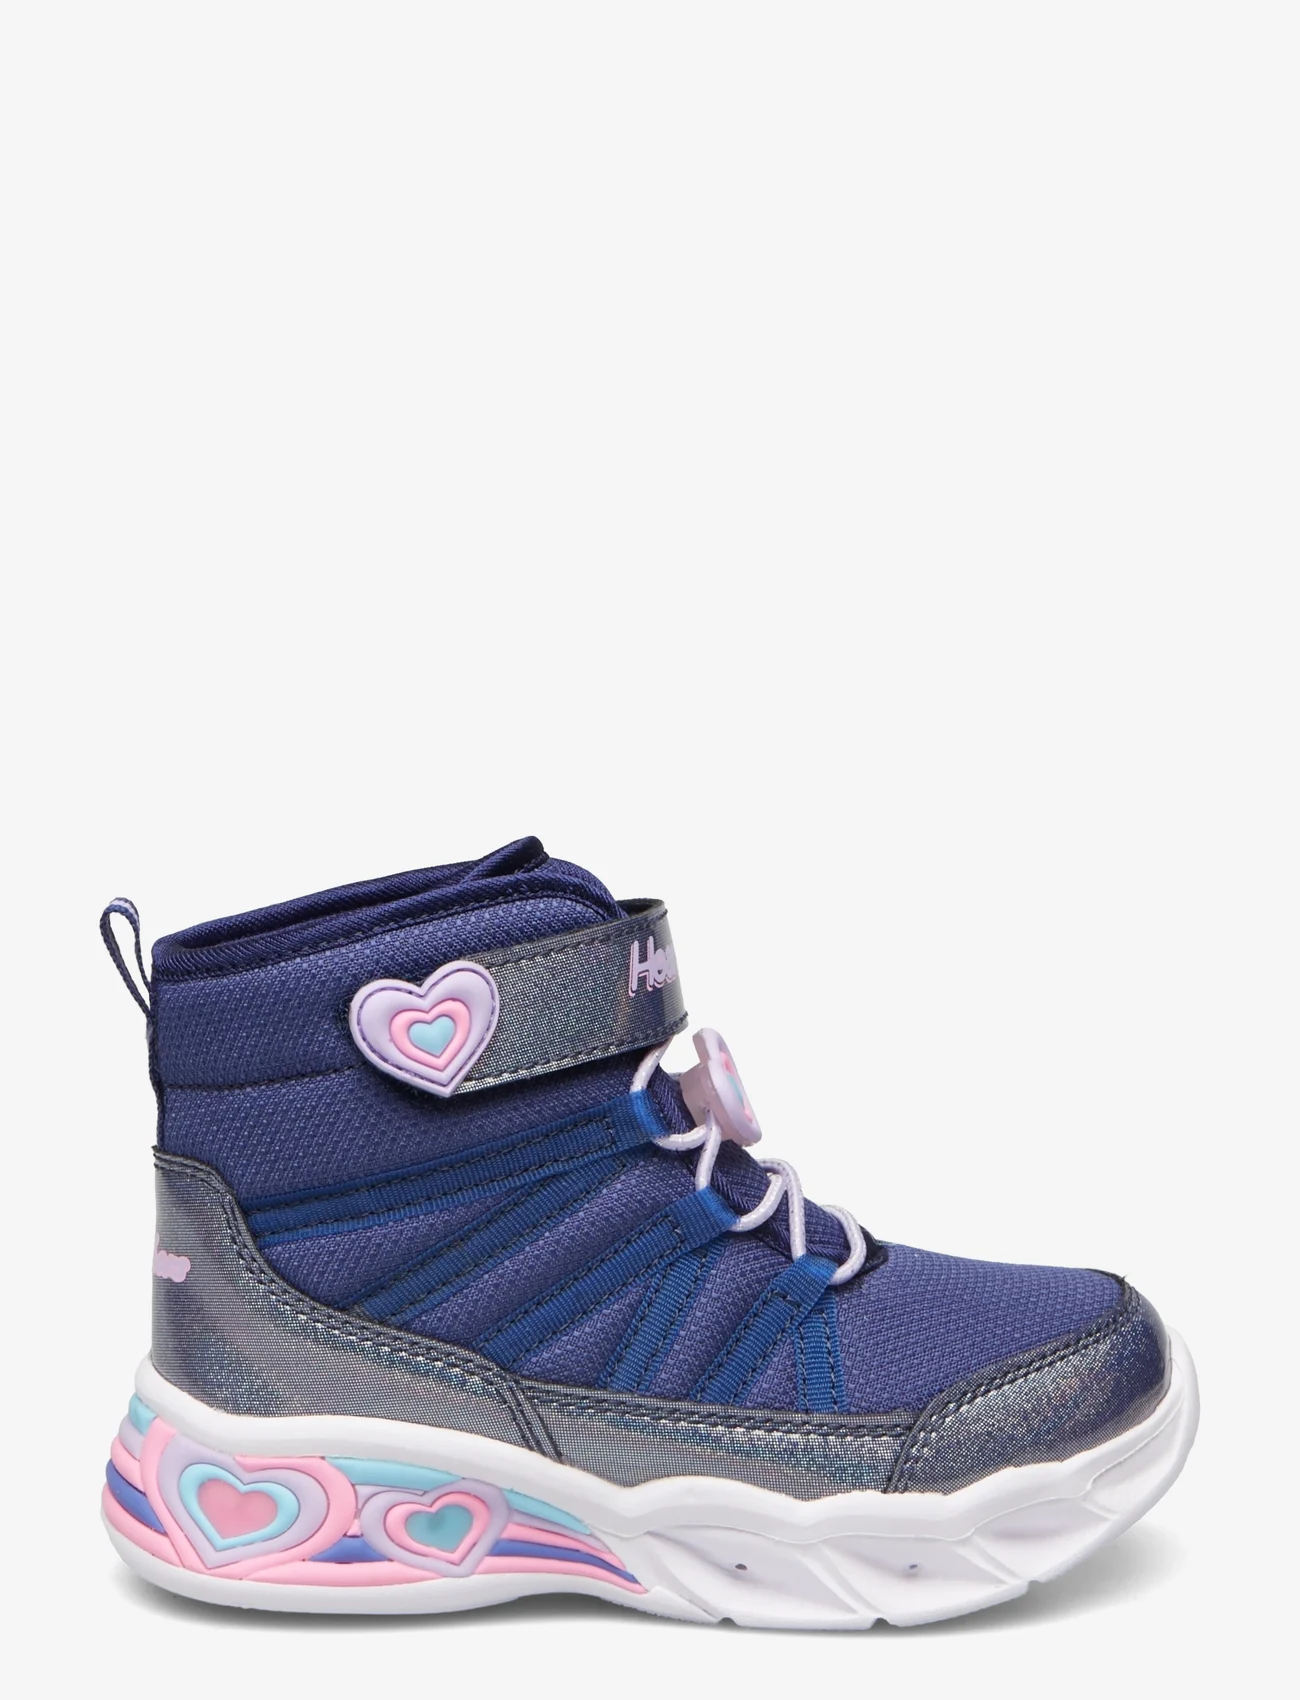 Skechers - Girls Sweetheart Light - Love To Shine - sneakers med høyt skaft - nvlv navy lavender - 1